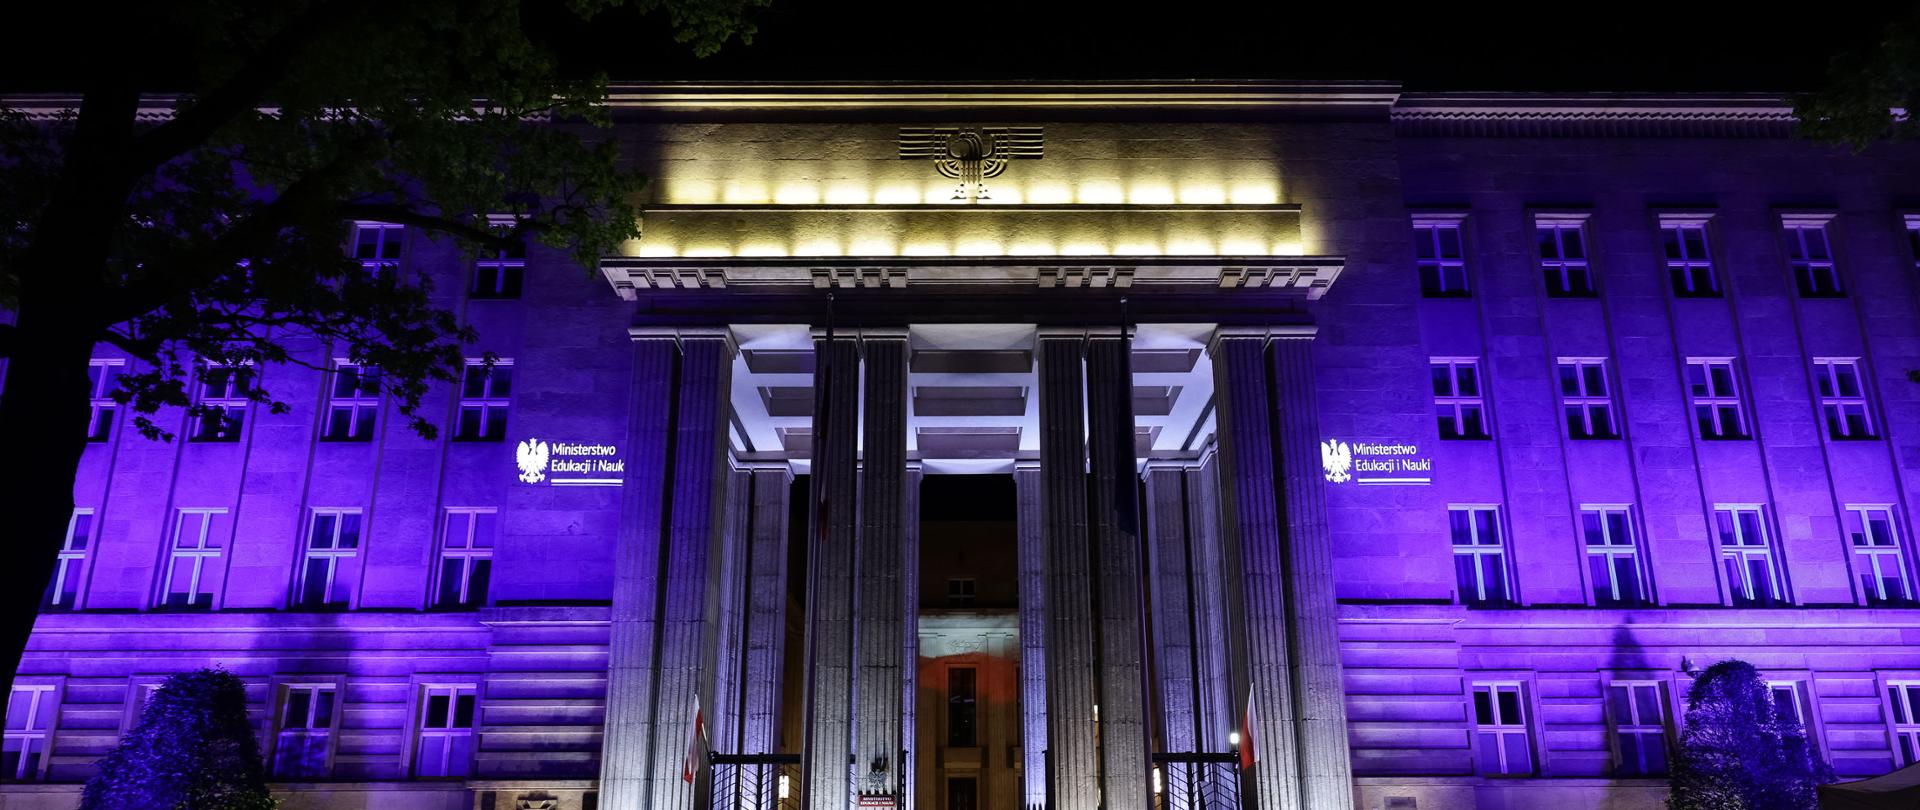 Nocny widok na frontową ścianę budynku ministerstwa, oświetloną na fioletowo po bokach i na żółto nad wejściem.